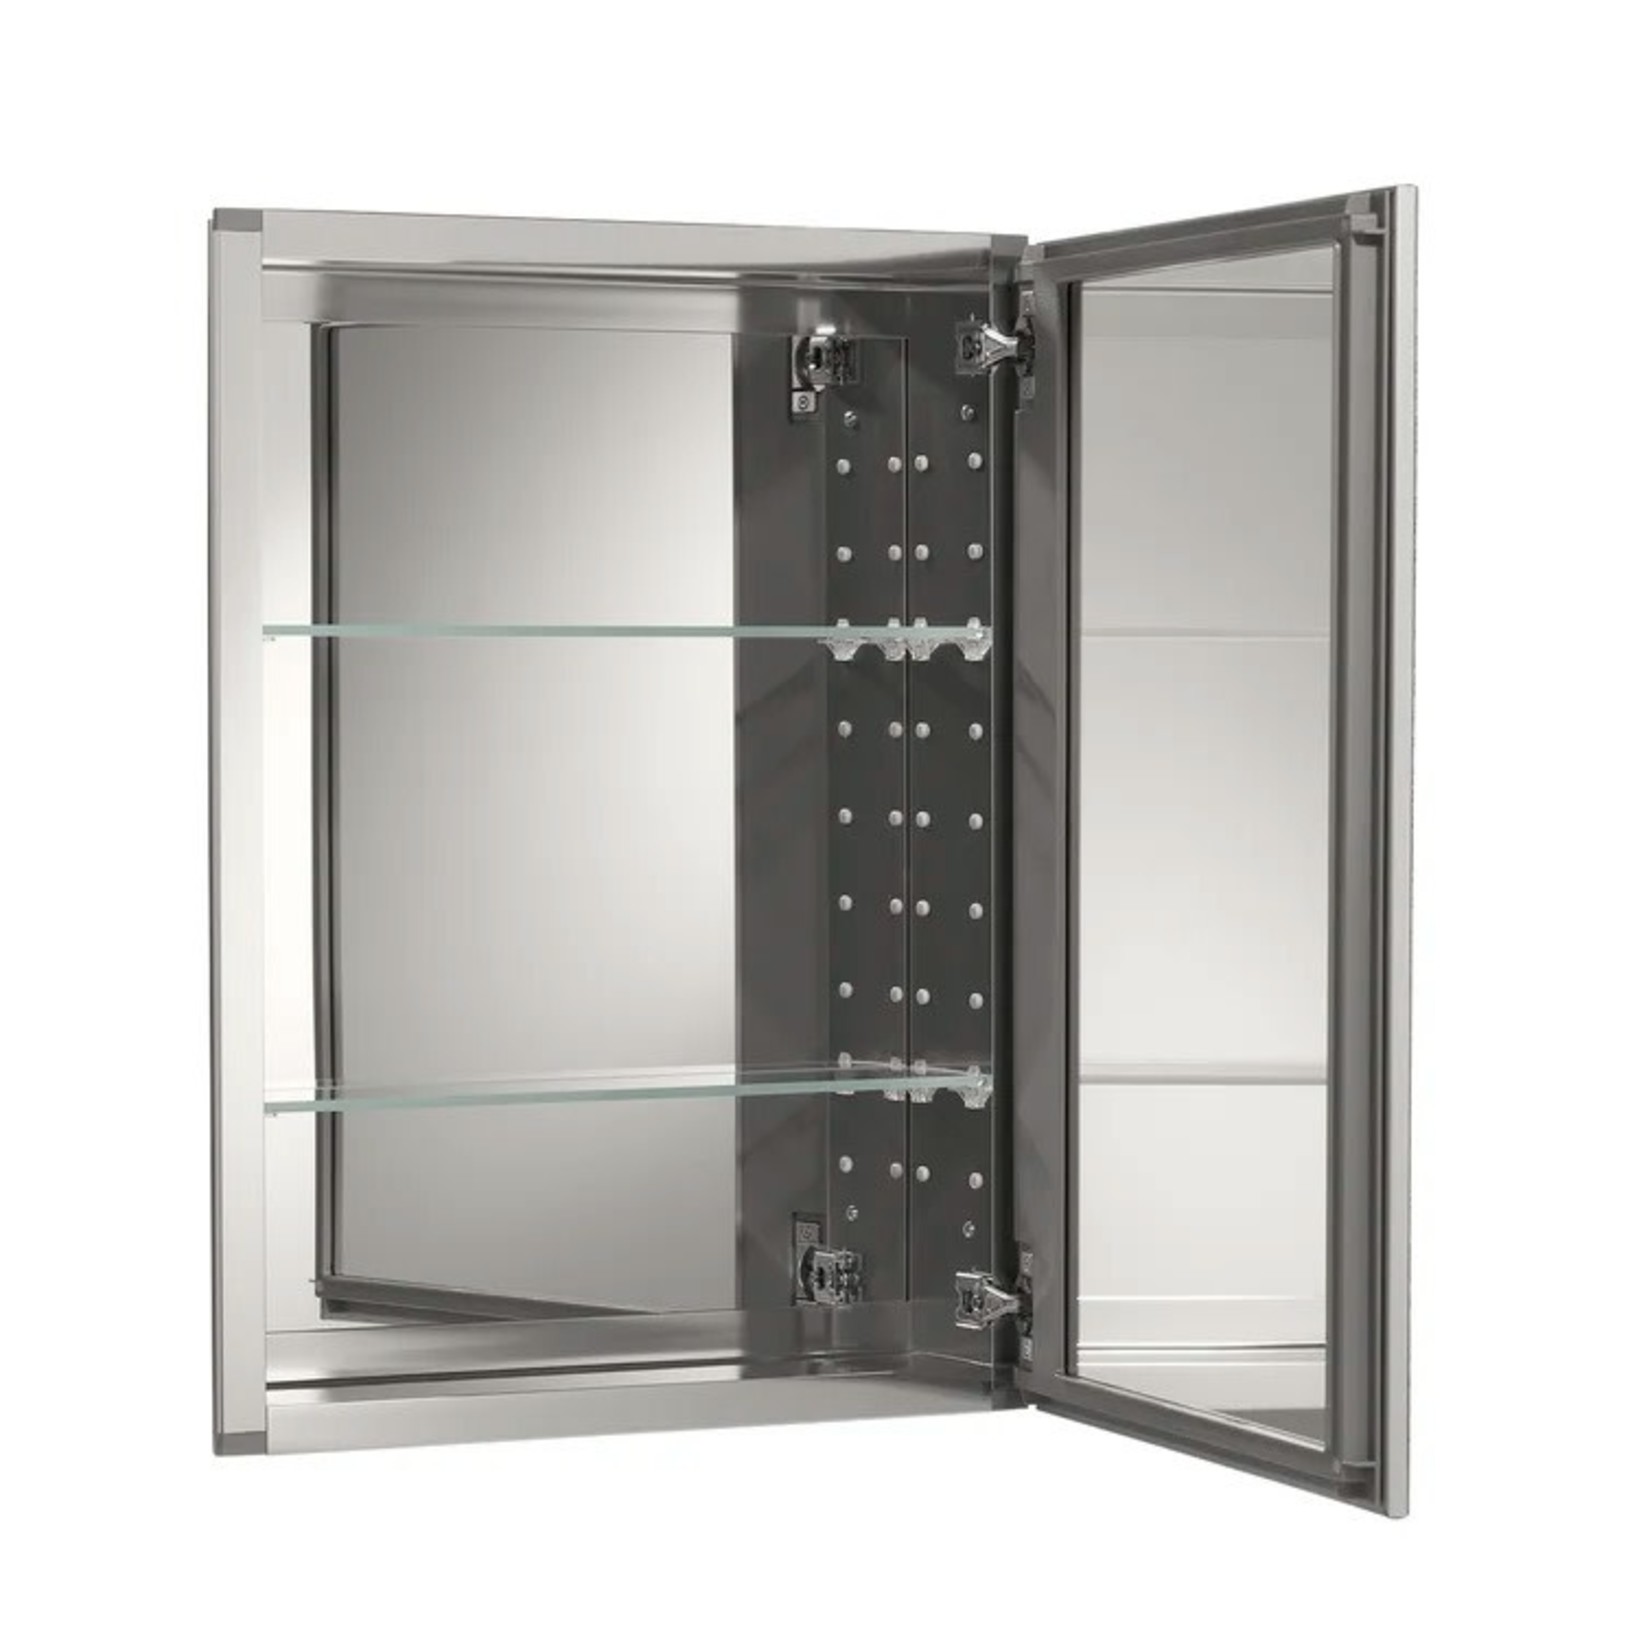 *26" x 20" Derring Recessed or Surface Mount Framed Medicine Cabinet with 2 Adjustable Shelves